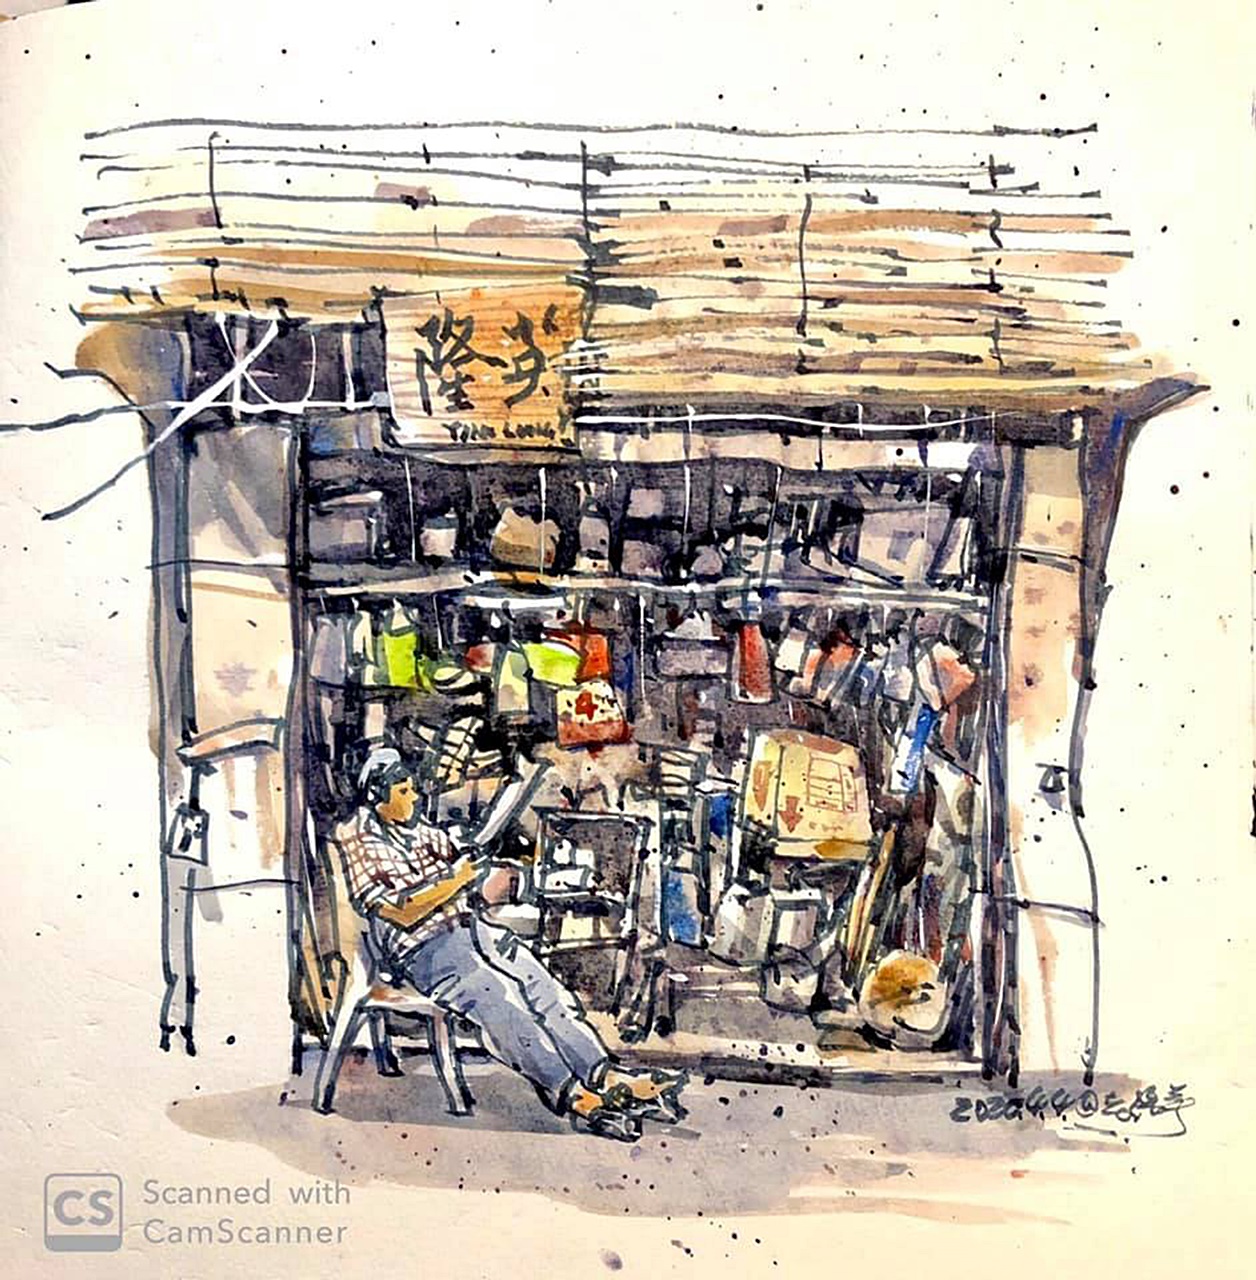 来自台湾的画友Leo Li，以简单轻松的笔触，绘出打铁店铺的悠闲画面。

